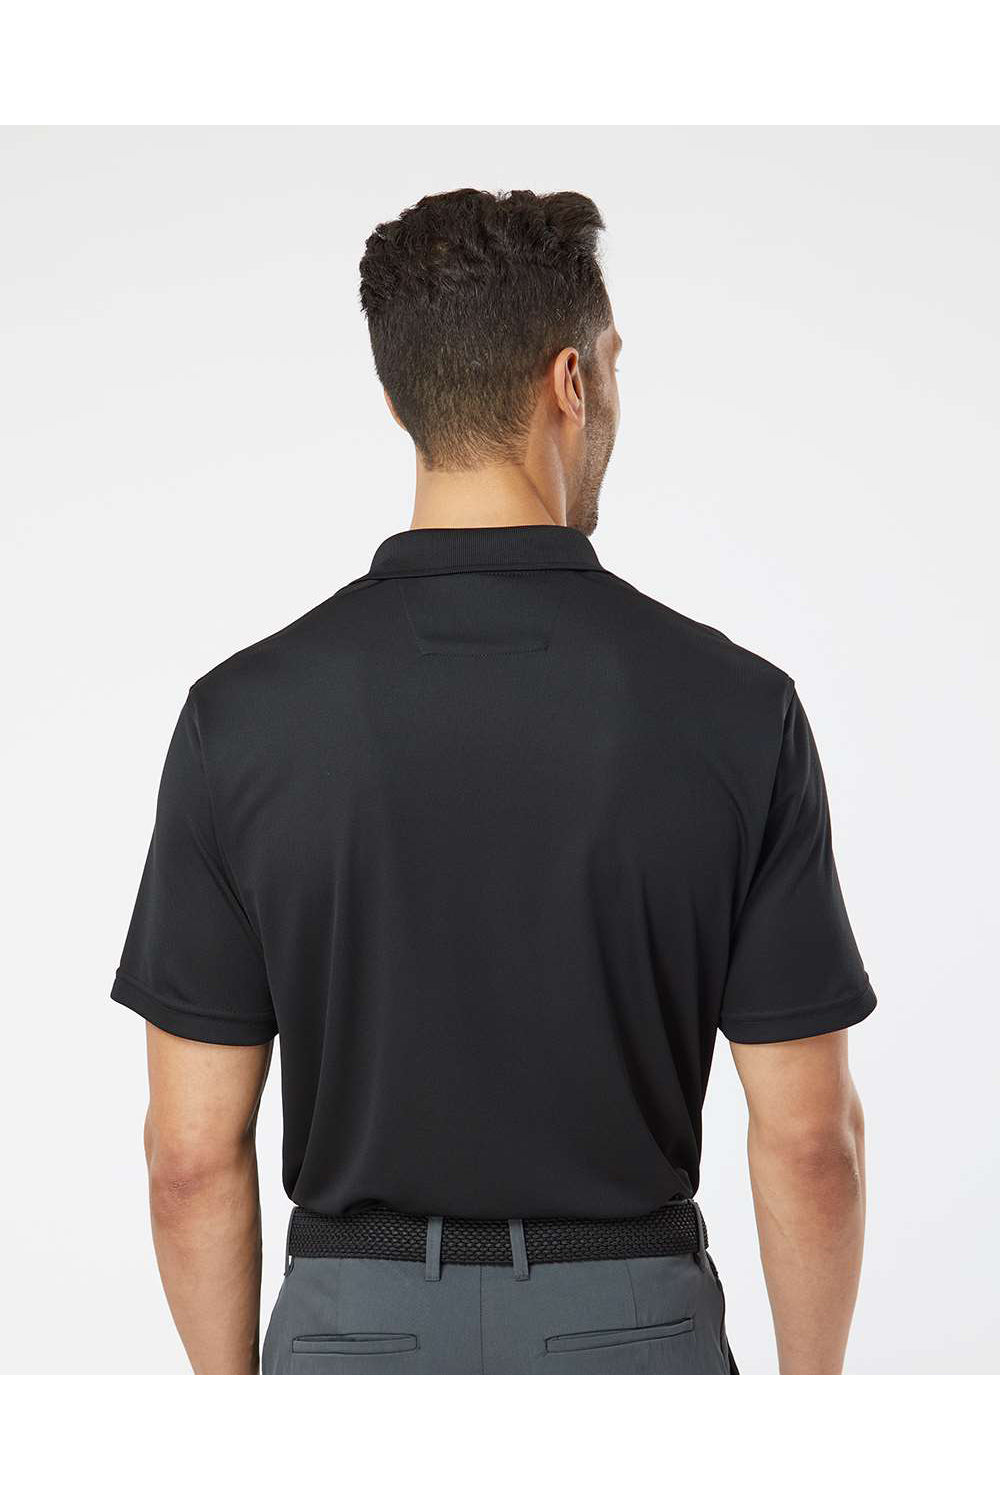 Paragon 100 Mens Saratoga Performance Mini Mesh Short Sleeve Polo Shirt Black Model Back